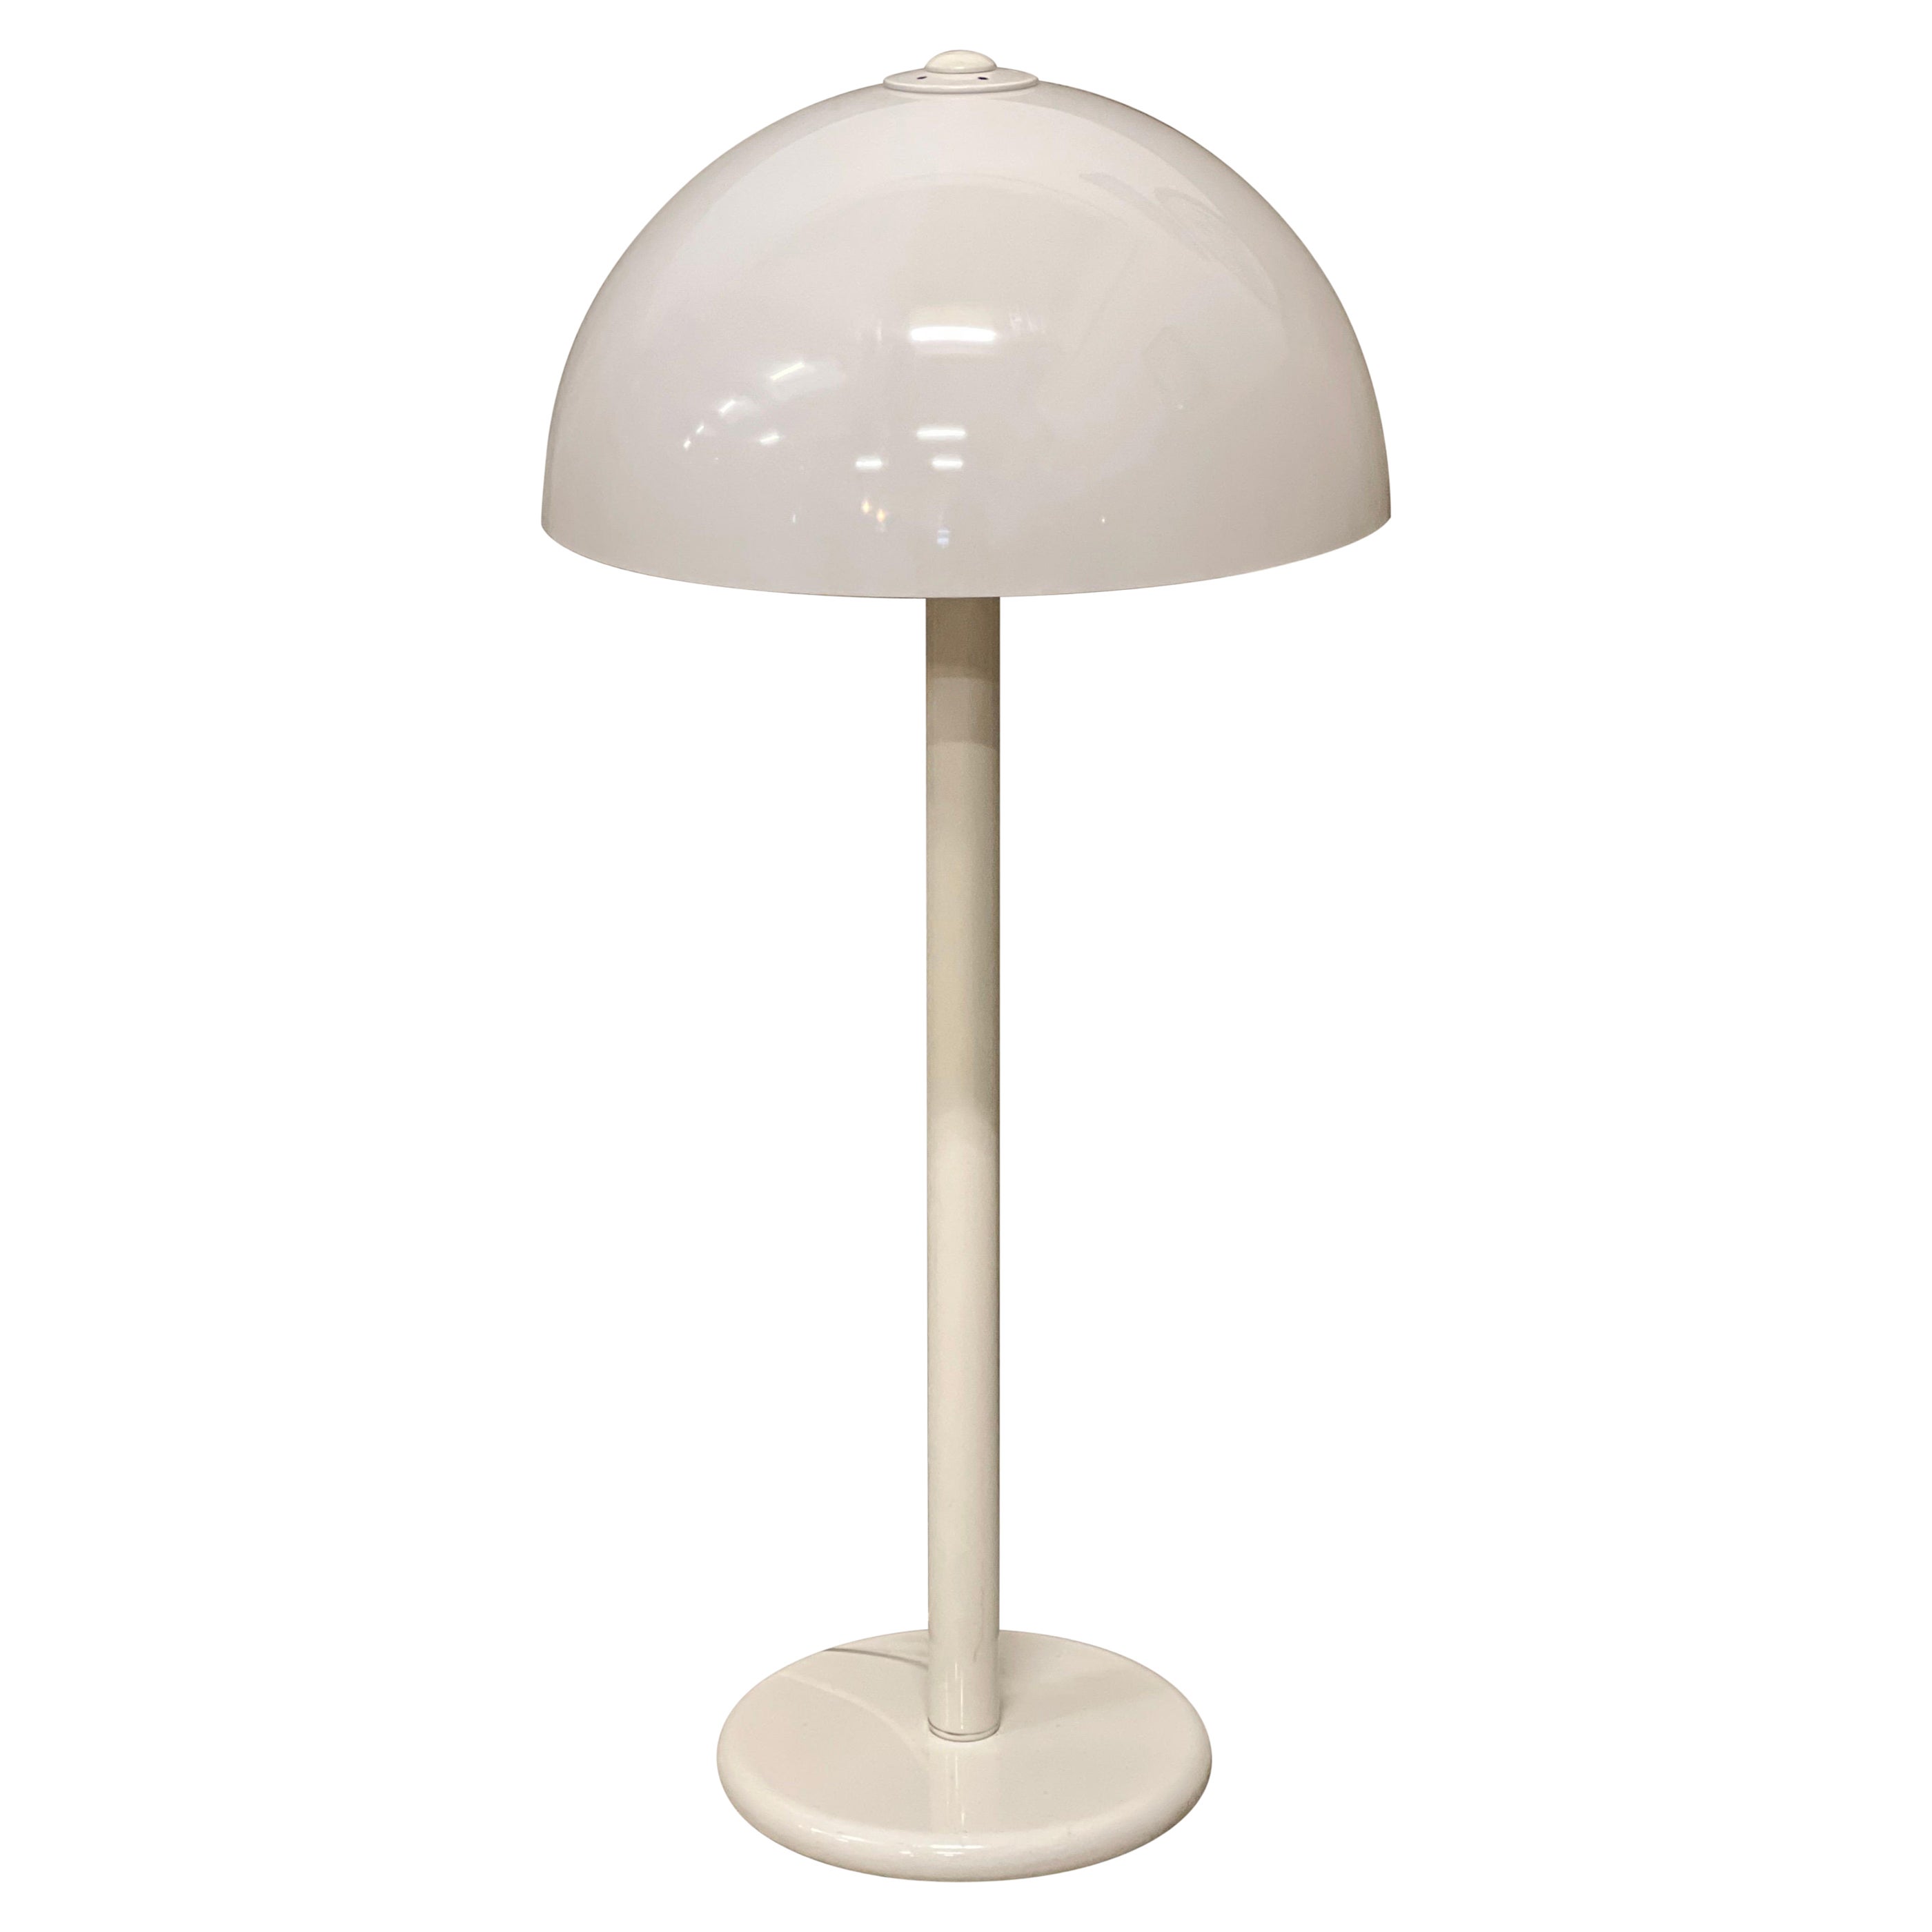 Mid-20th Century Space Age Mushroom Lamp